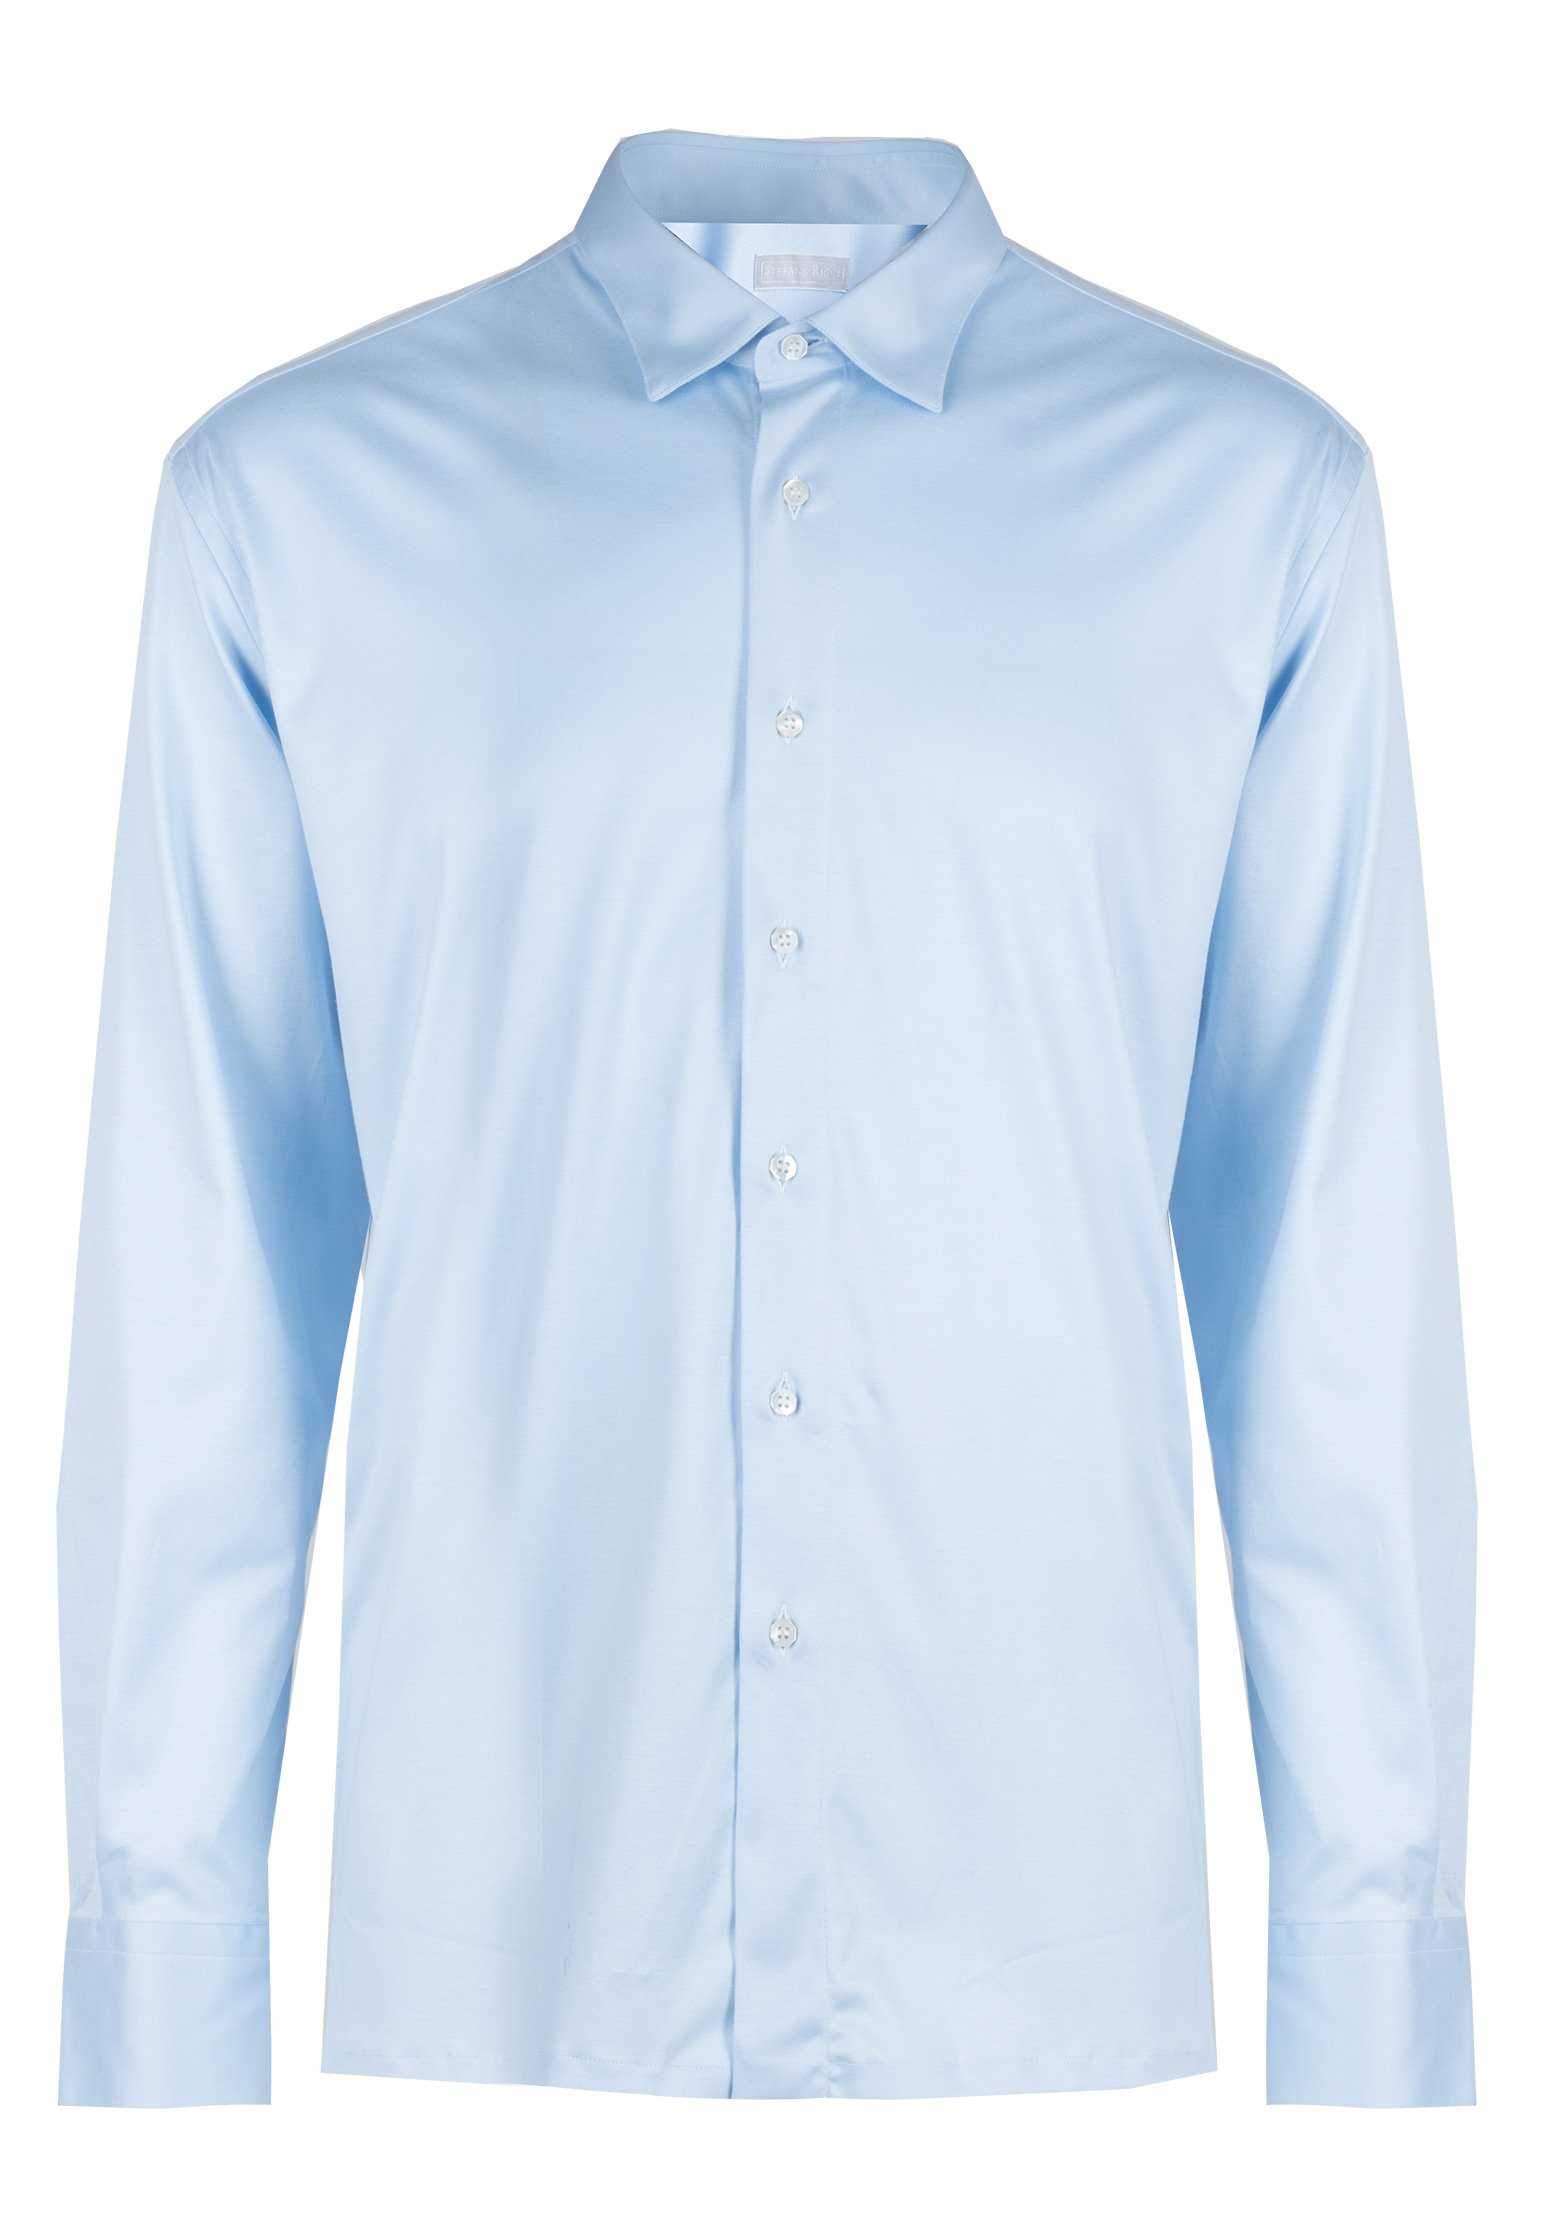 Хлопковая рубашка STEFANO RICCI Голубой, размер 45 104026 - фото 1